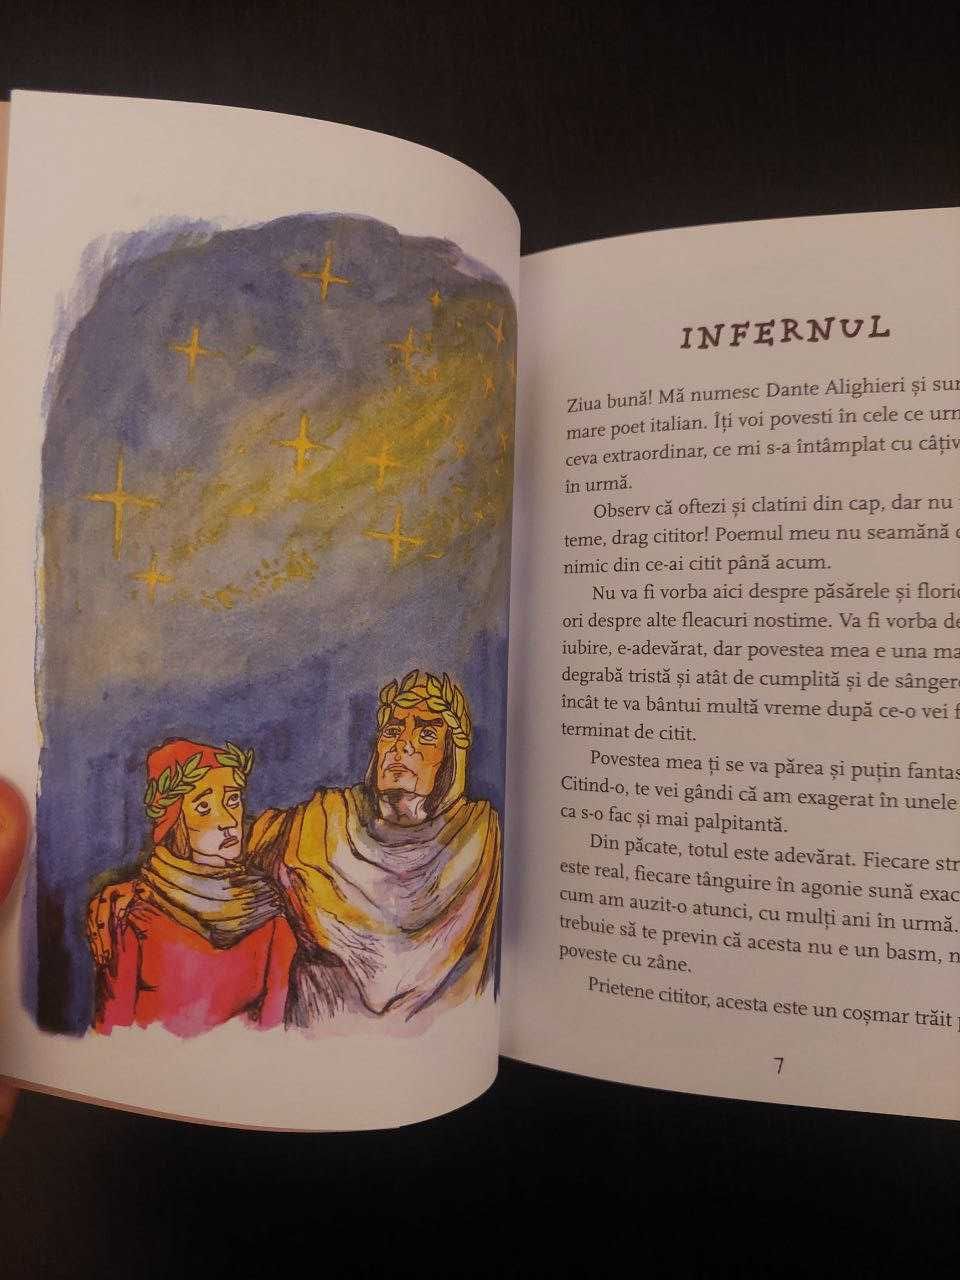 Infernul (Dante Aligheri), repovestita, ilustrata, stare noua